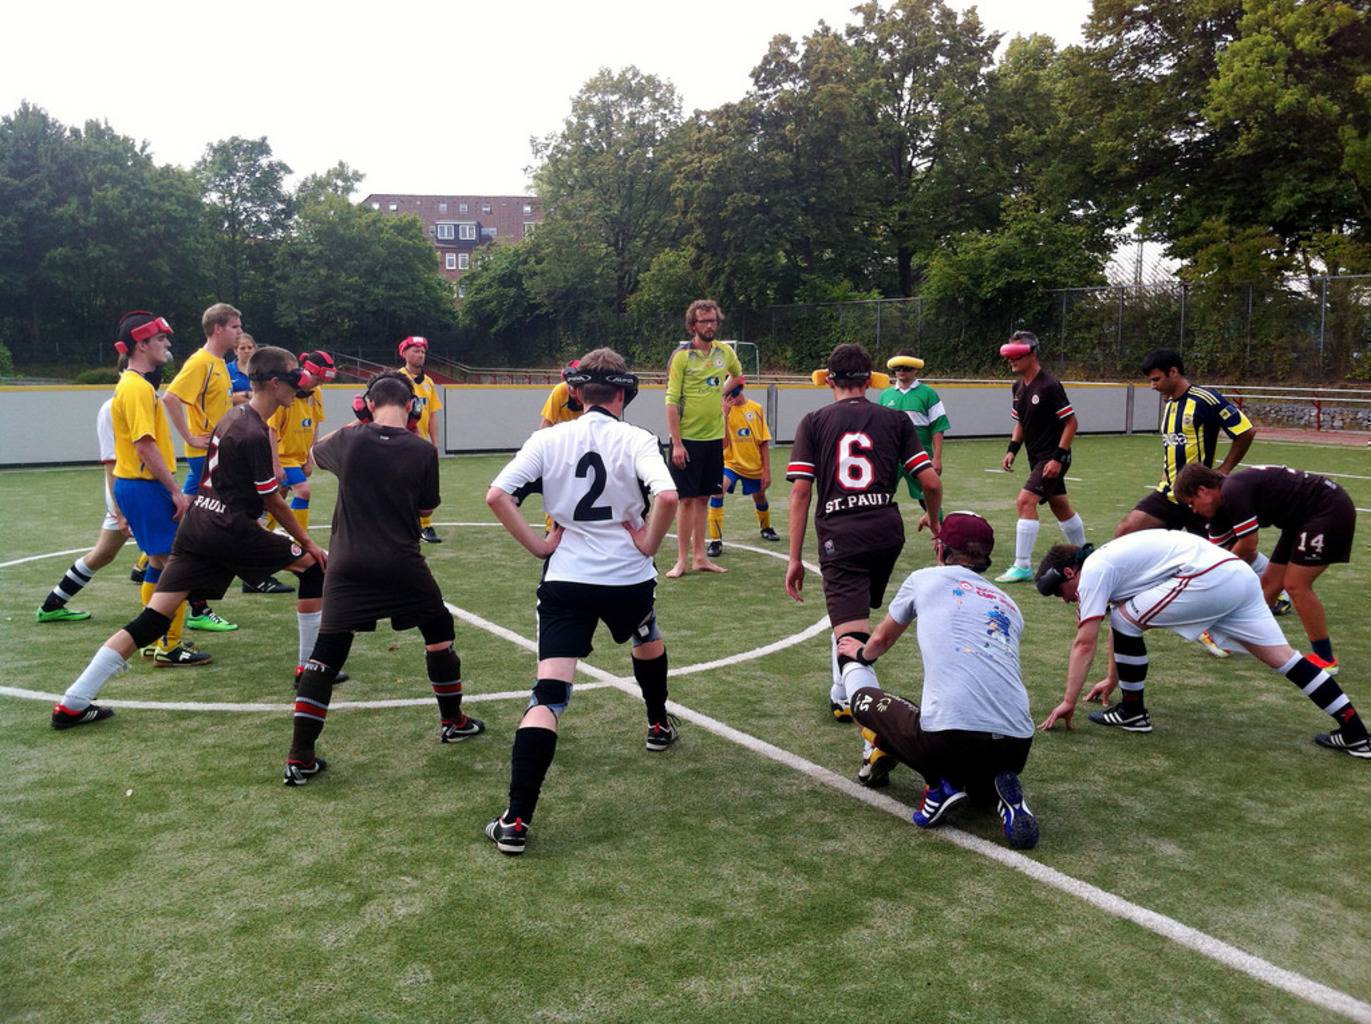 Spieler beider Mannschaften bilden einen großen Kreis auf dem Spielfeld und dehnen sich.